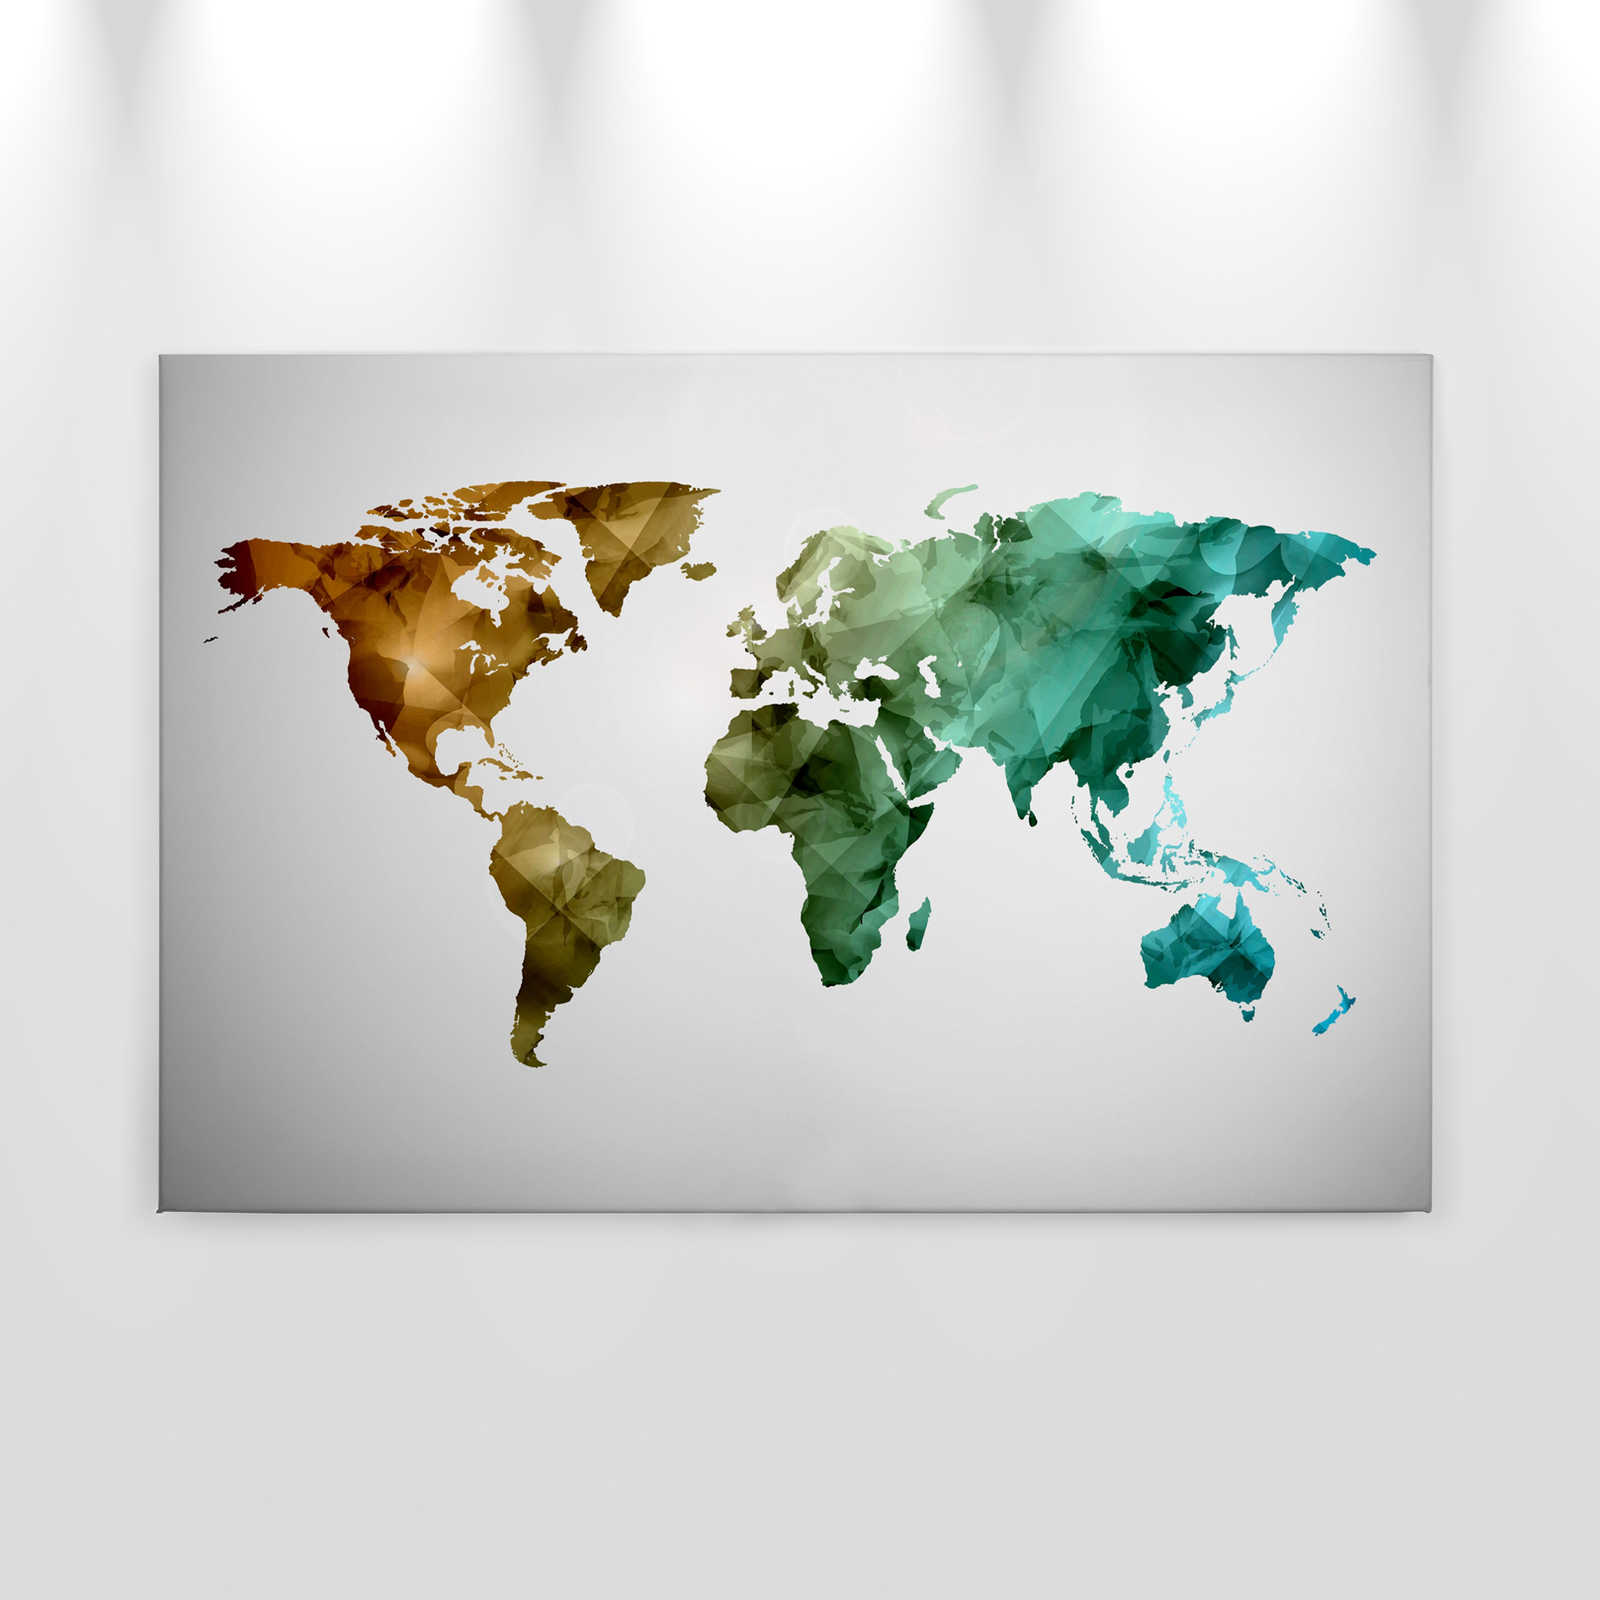             Leinwand mit Weltkarte aus grafischen Elementen | WorldGrafic 1 – 0,90 m x 0,60 m
        